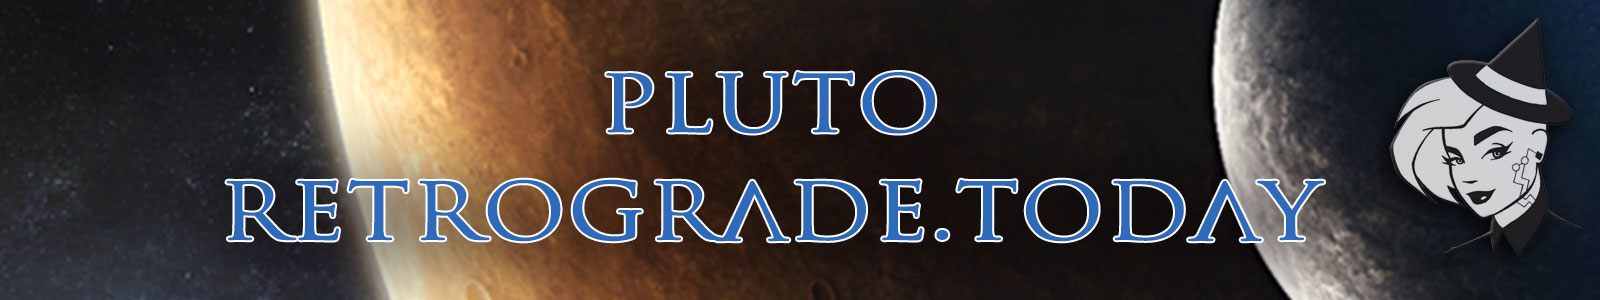 Pluto Retrograde Today